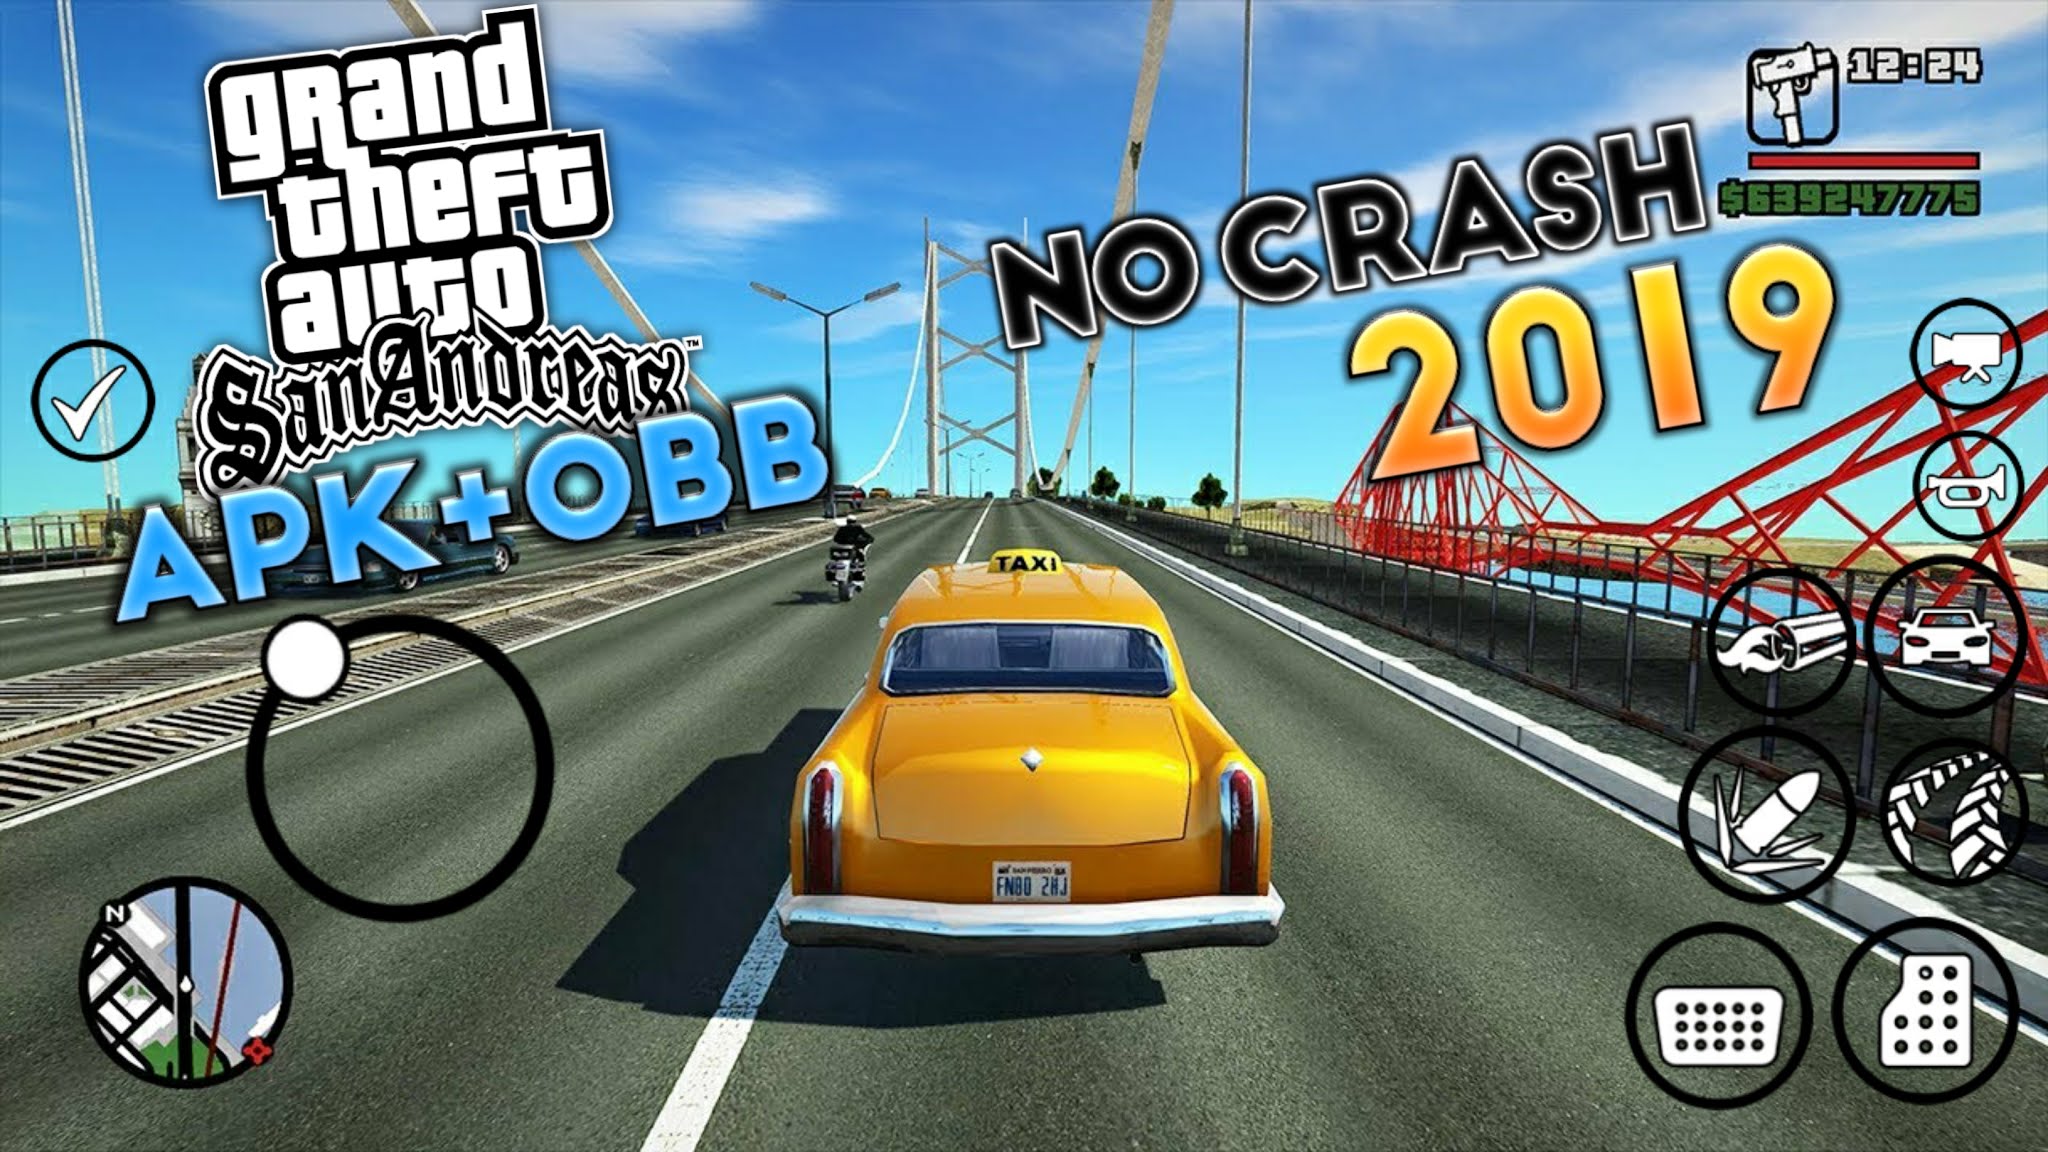 Gta San Andreas V2 00 Apk Obb For Nougat Oreo Pie All Problem Fixed No Crash No Force Close Gaming World Bangla Gta Sa Android Mods Modpack Gta Sa Lite